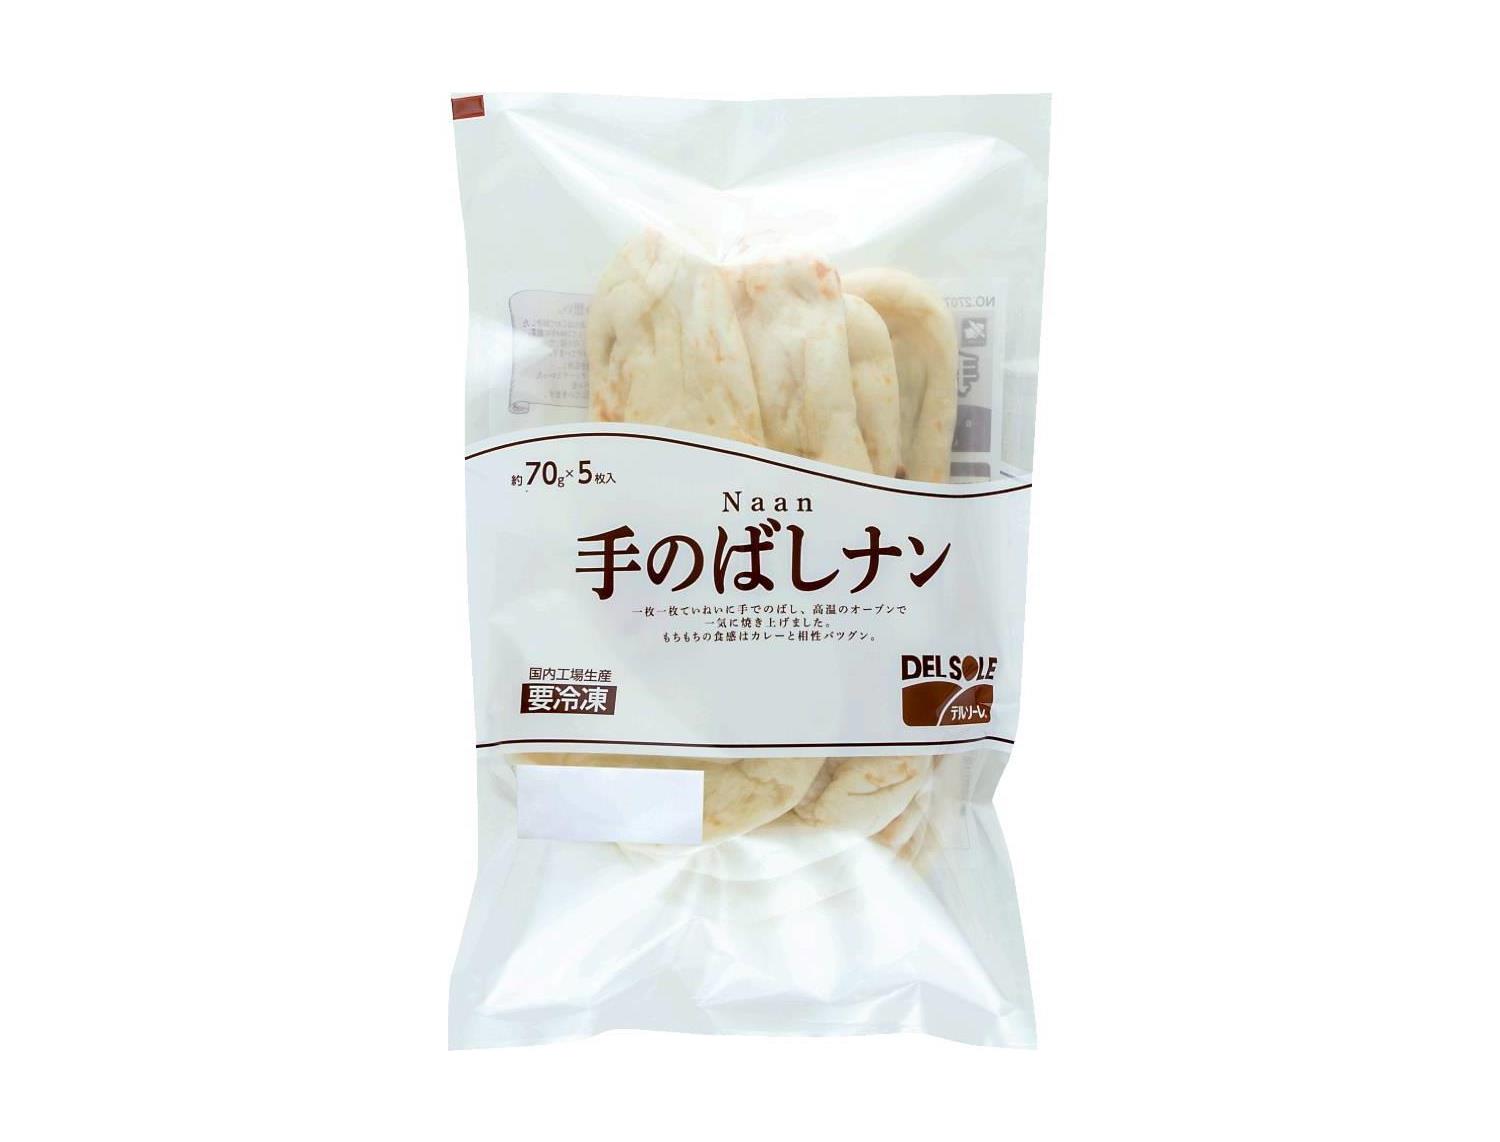 特価品コーナー☆特価品コーナー☆デルソーレ 手のばしナン 2枚入 パン